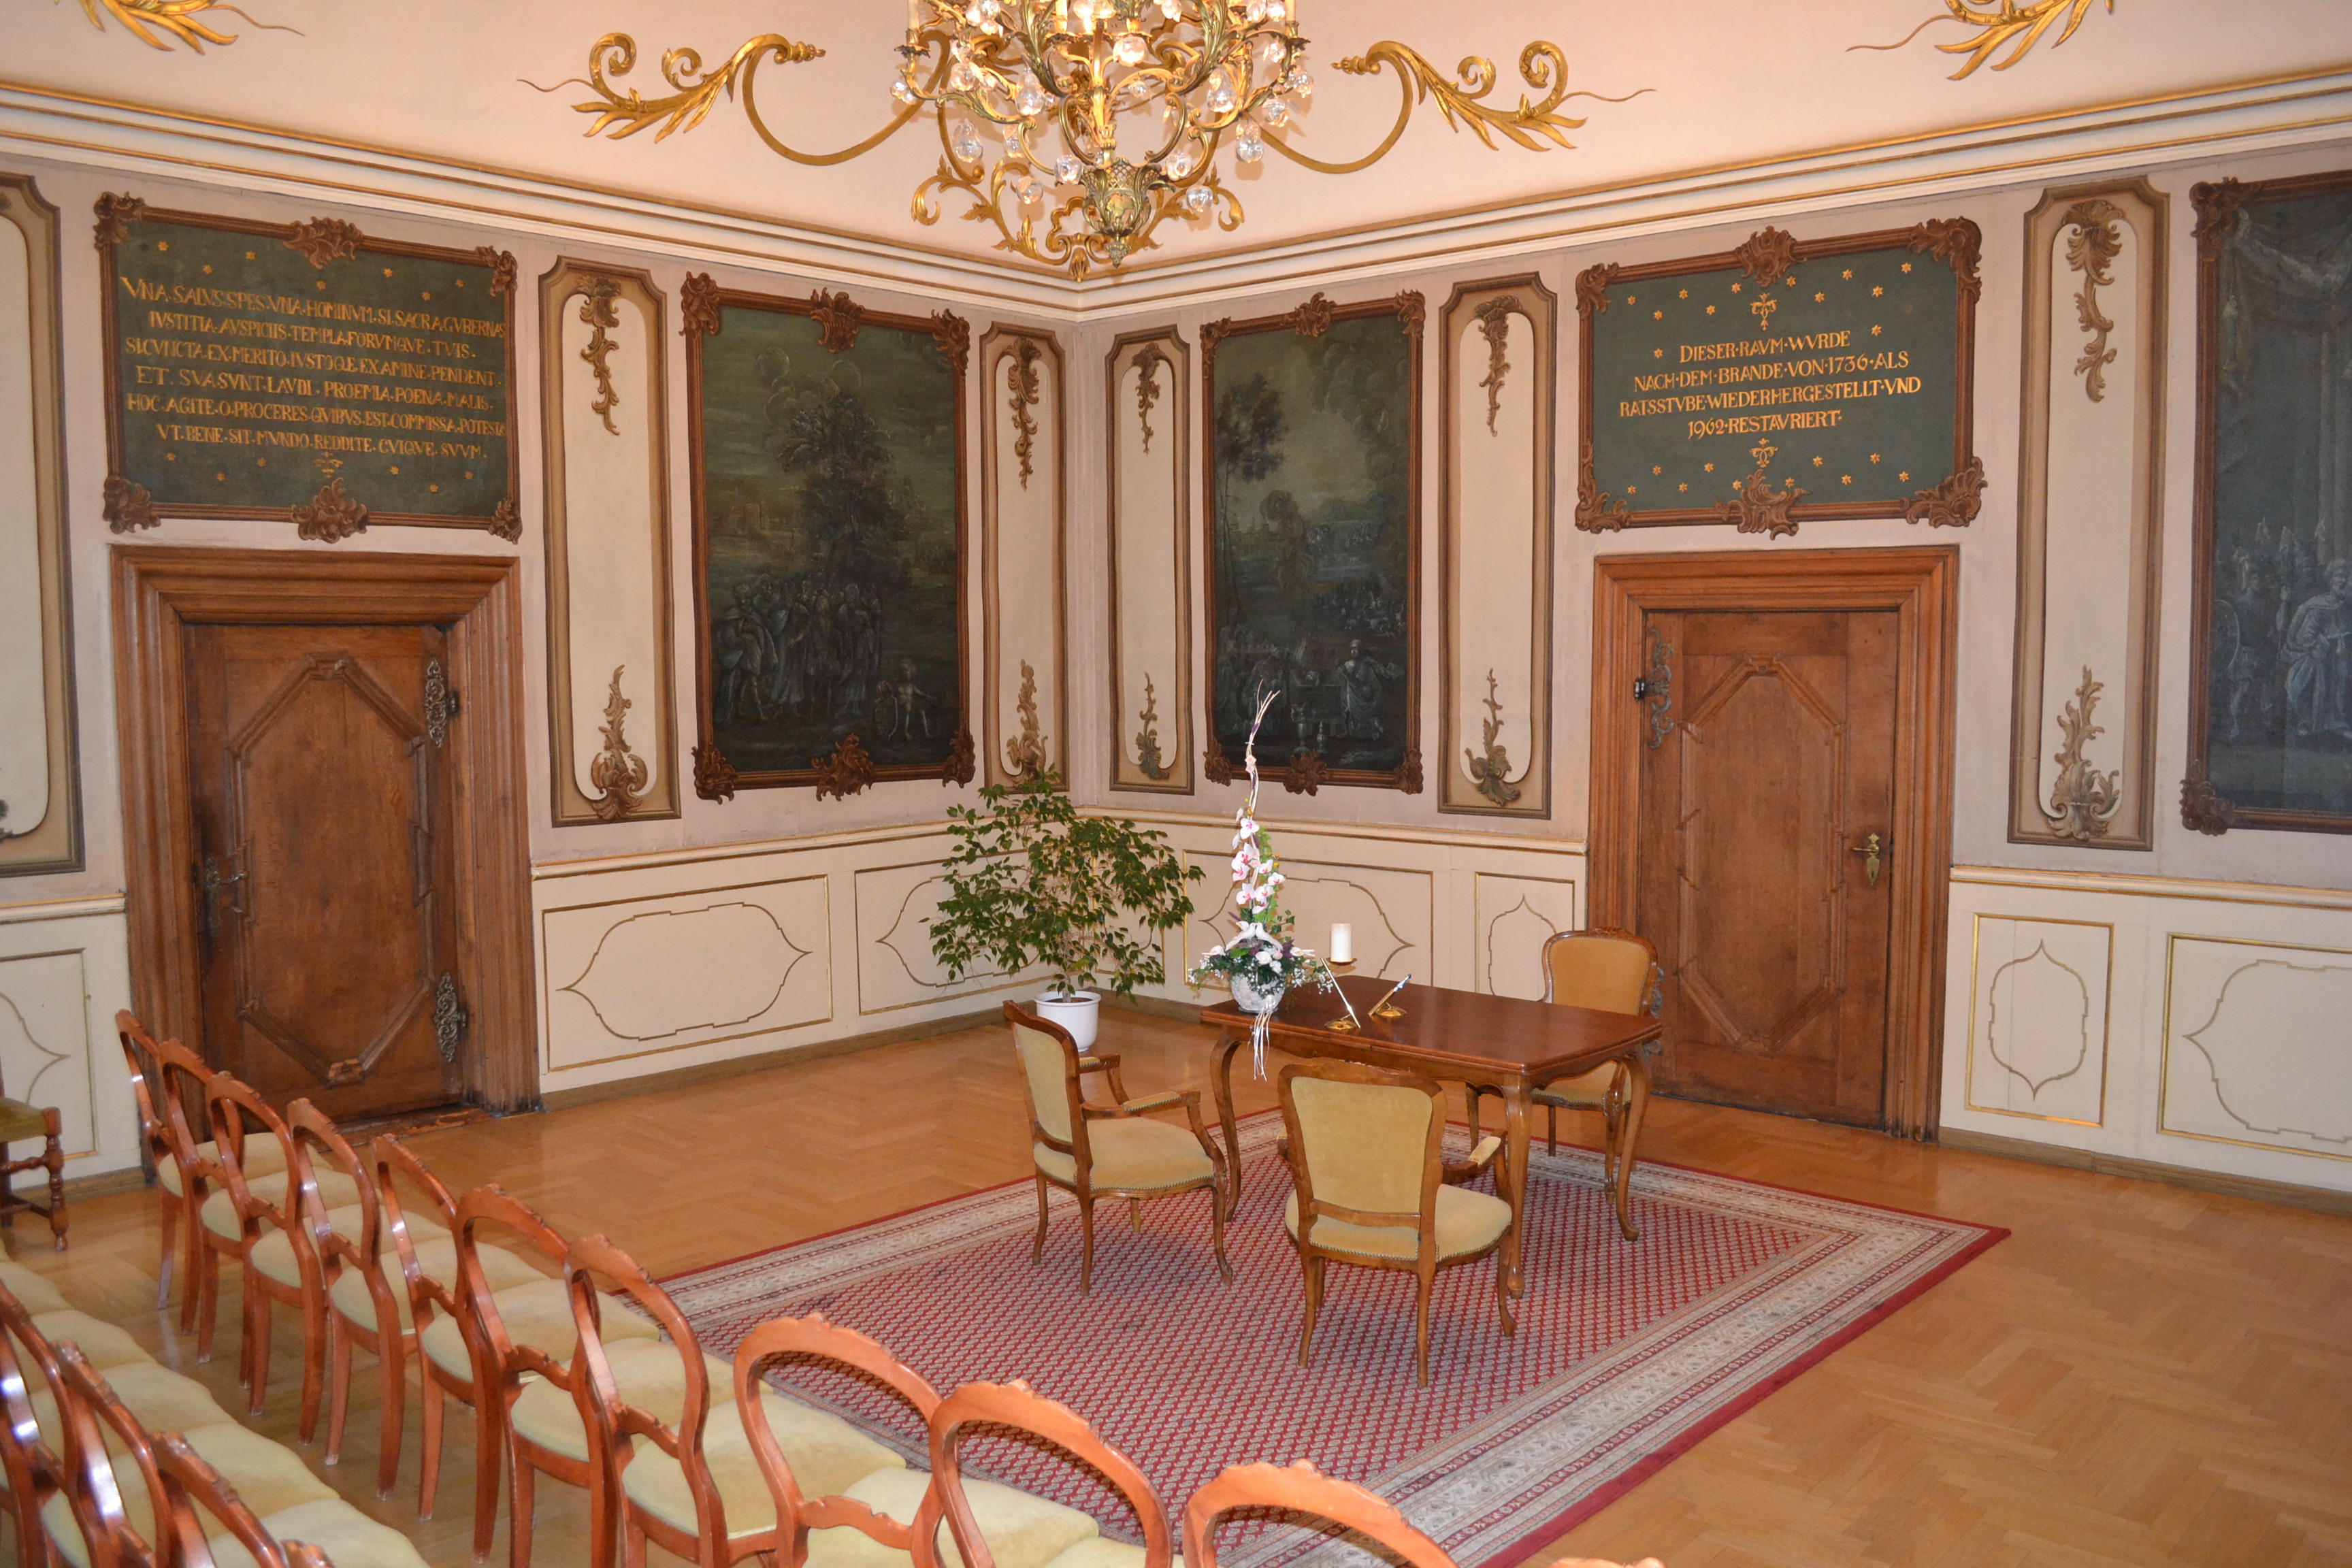 Der Trausaal im Rathaus mit geschichtsträchtigen Bildern und vergoldeten Details